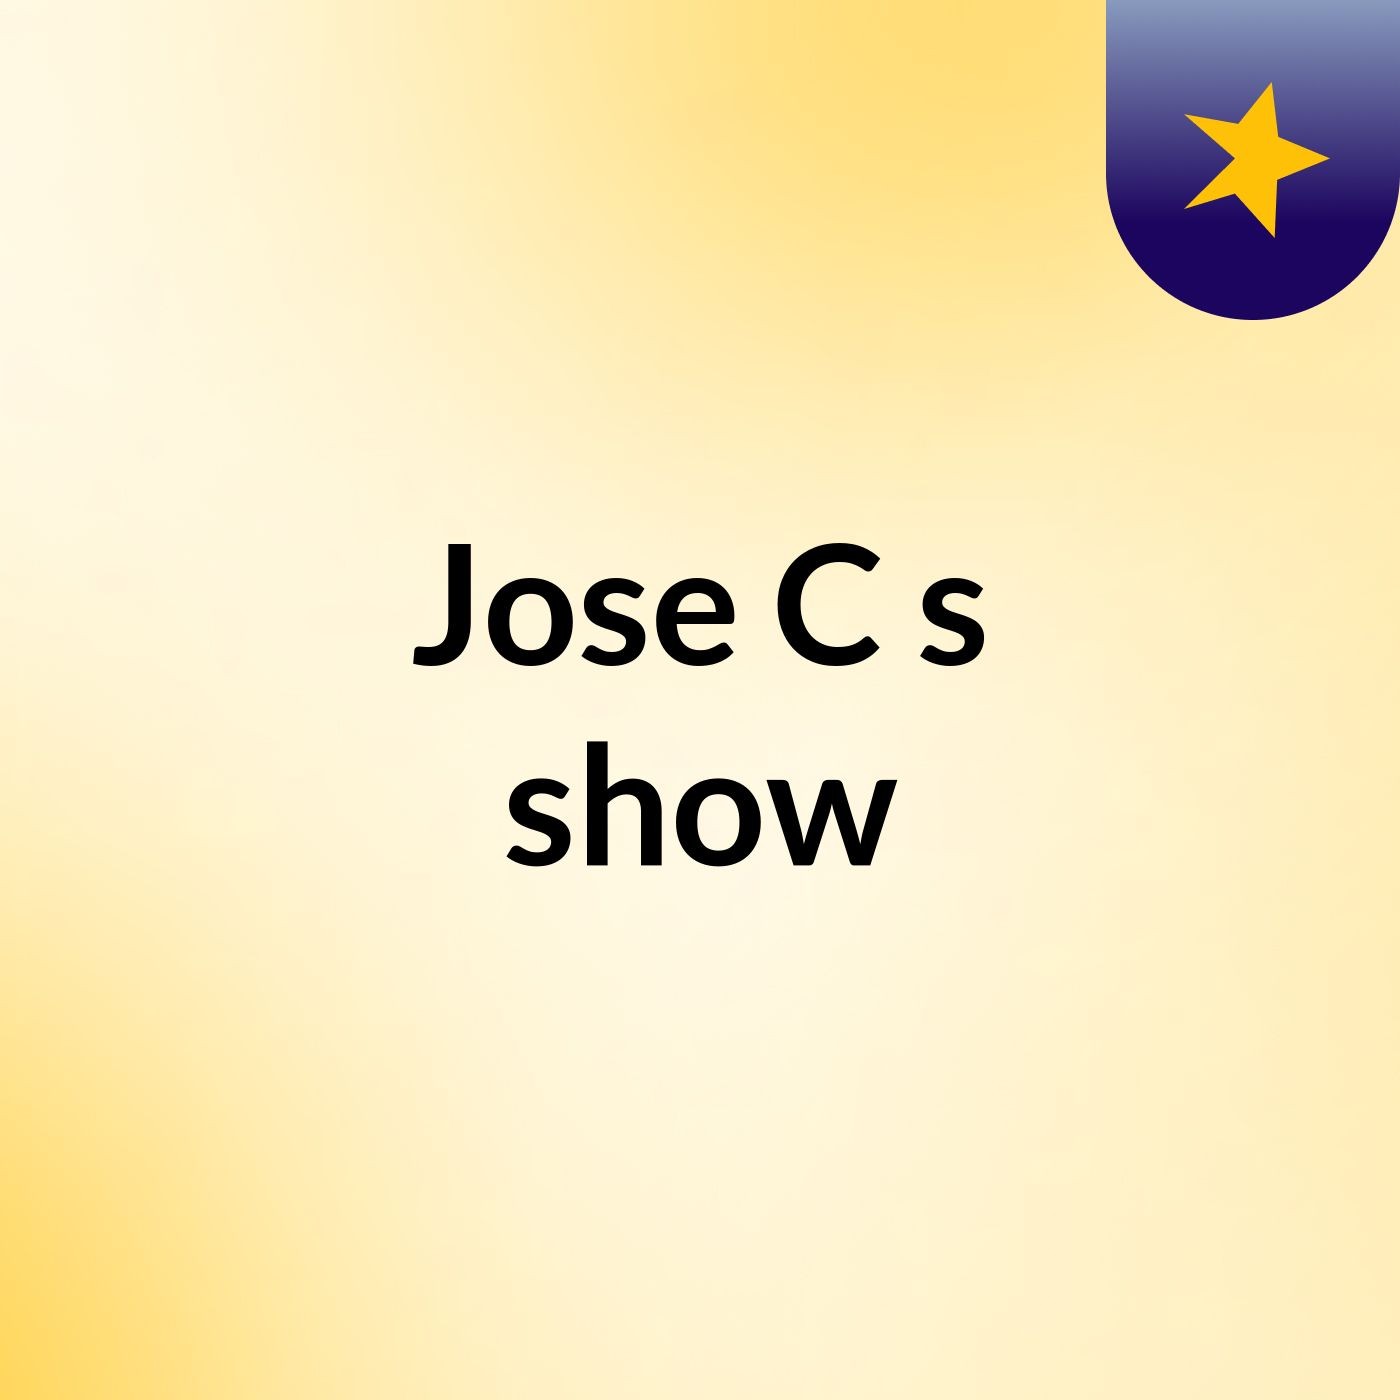 Jose C's show